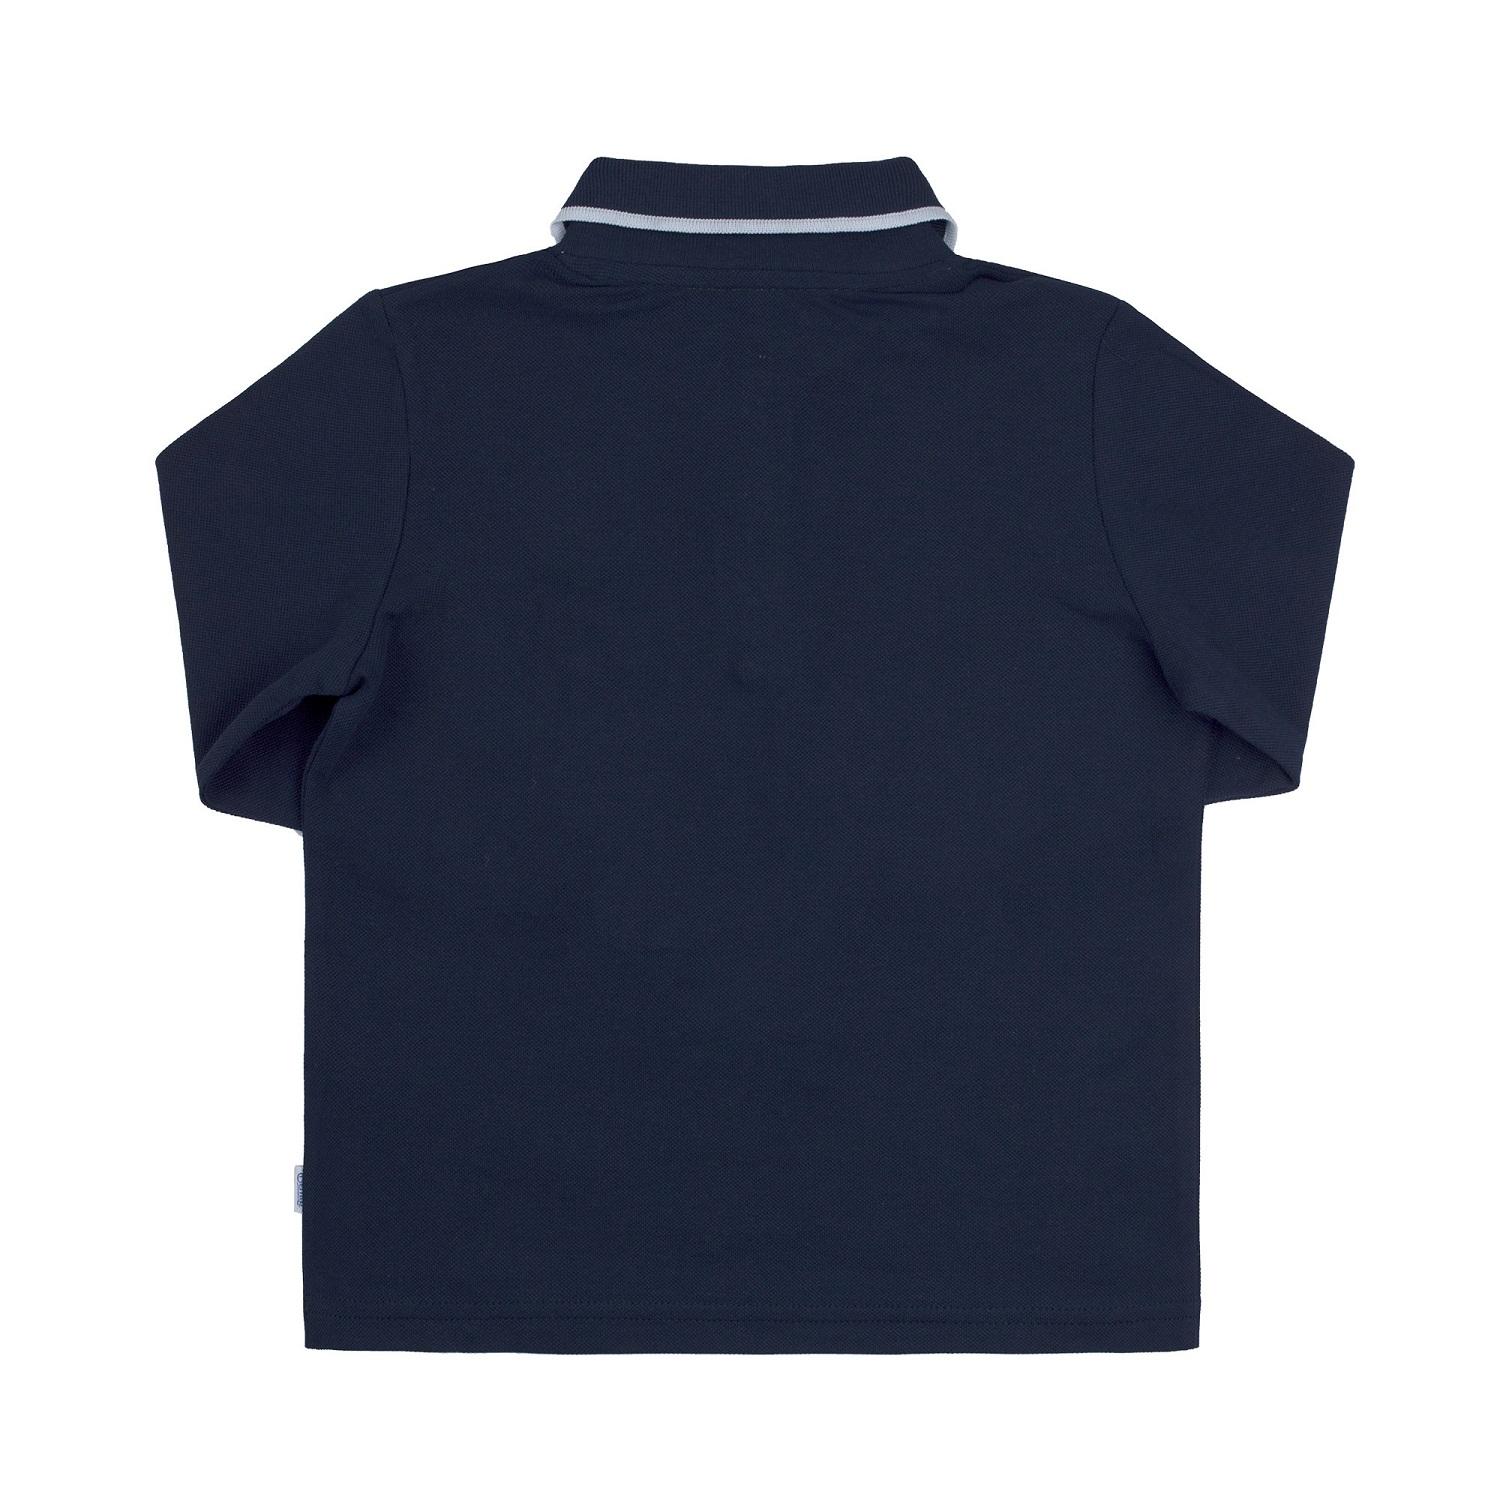 Дитяча футболка-поло з довгим рукавом для хлопчика, темно-синя (ФБ757), Бембі